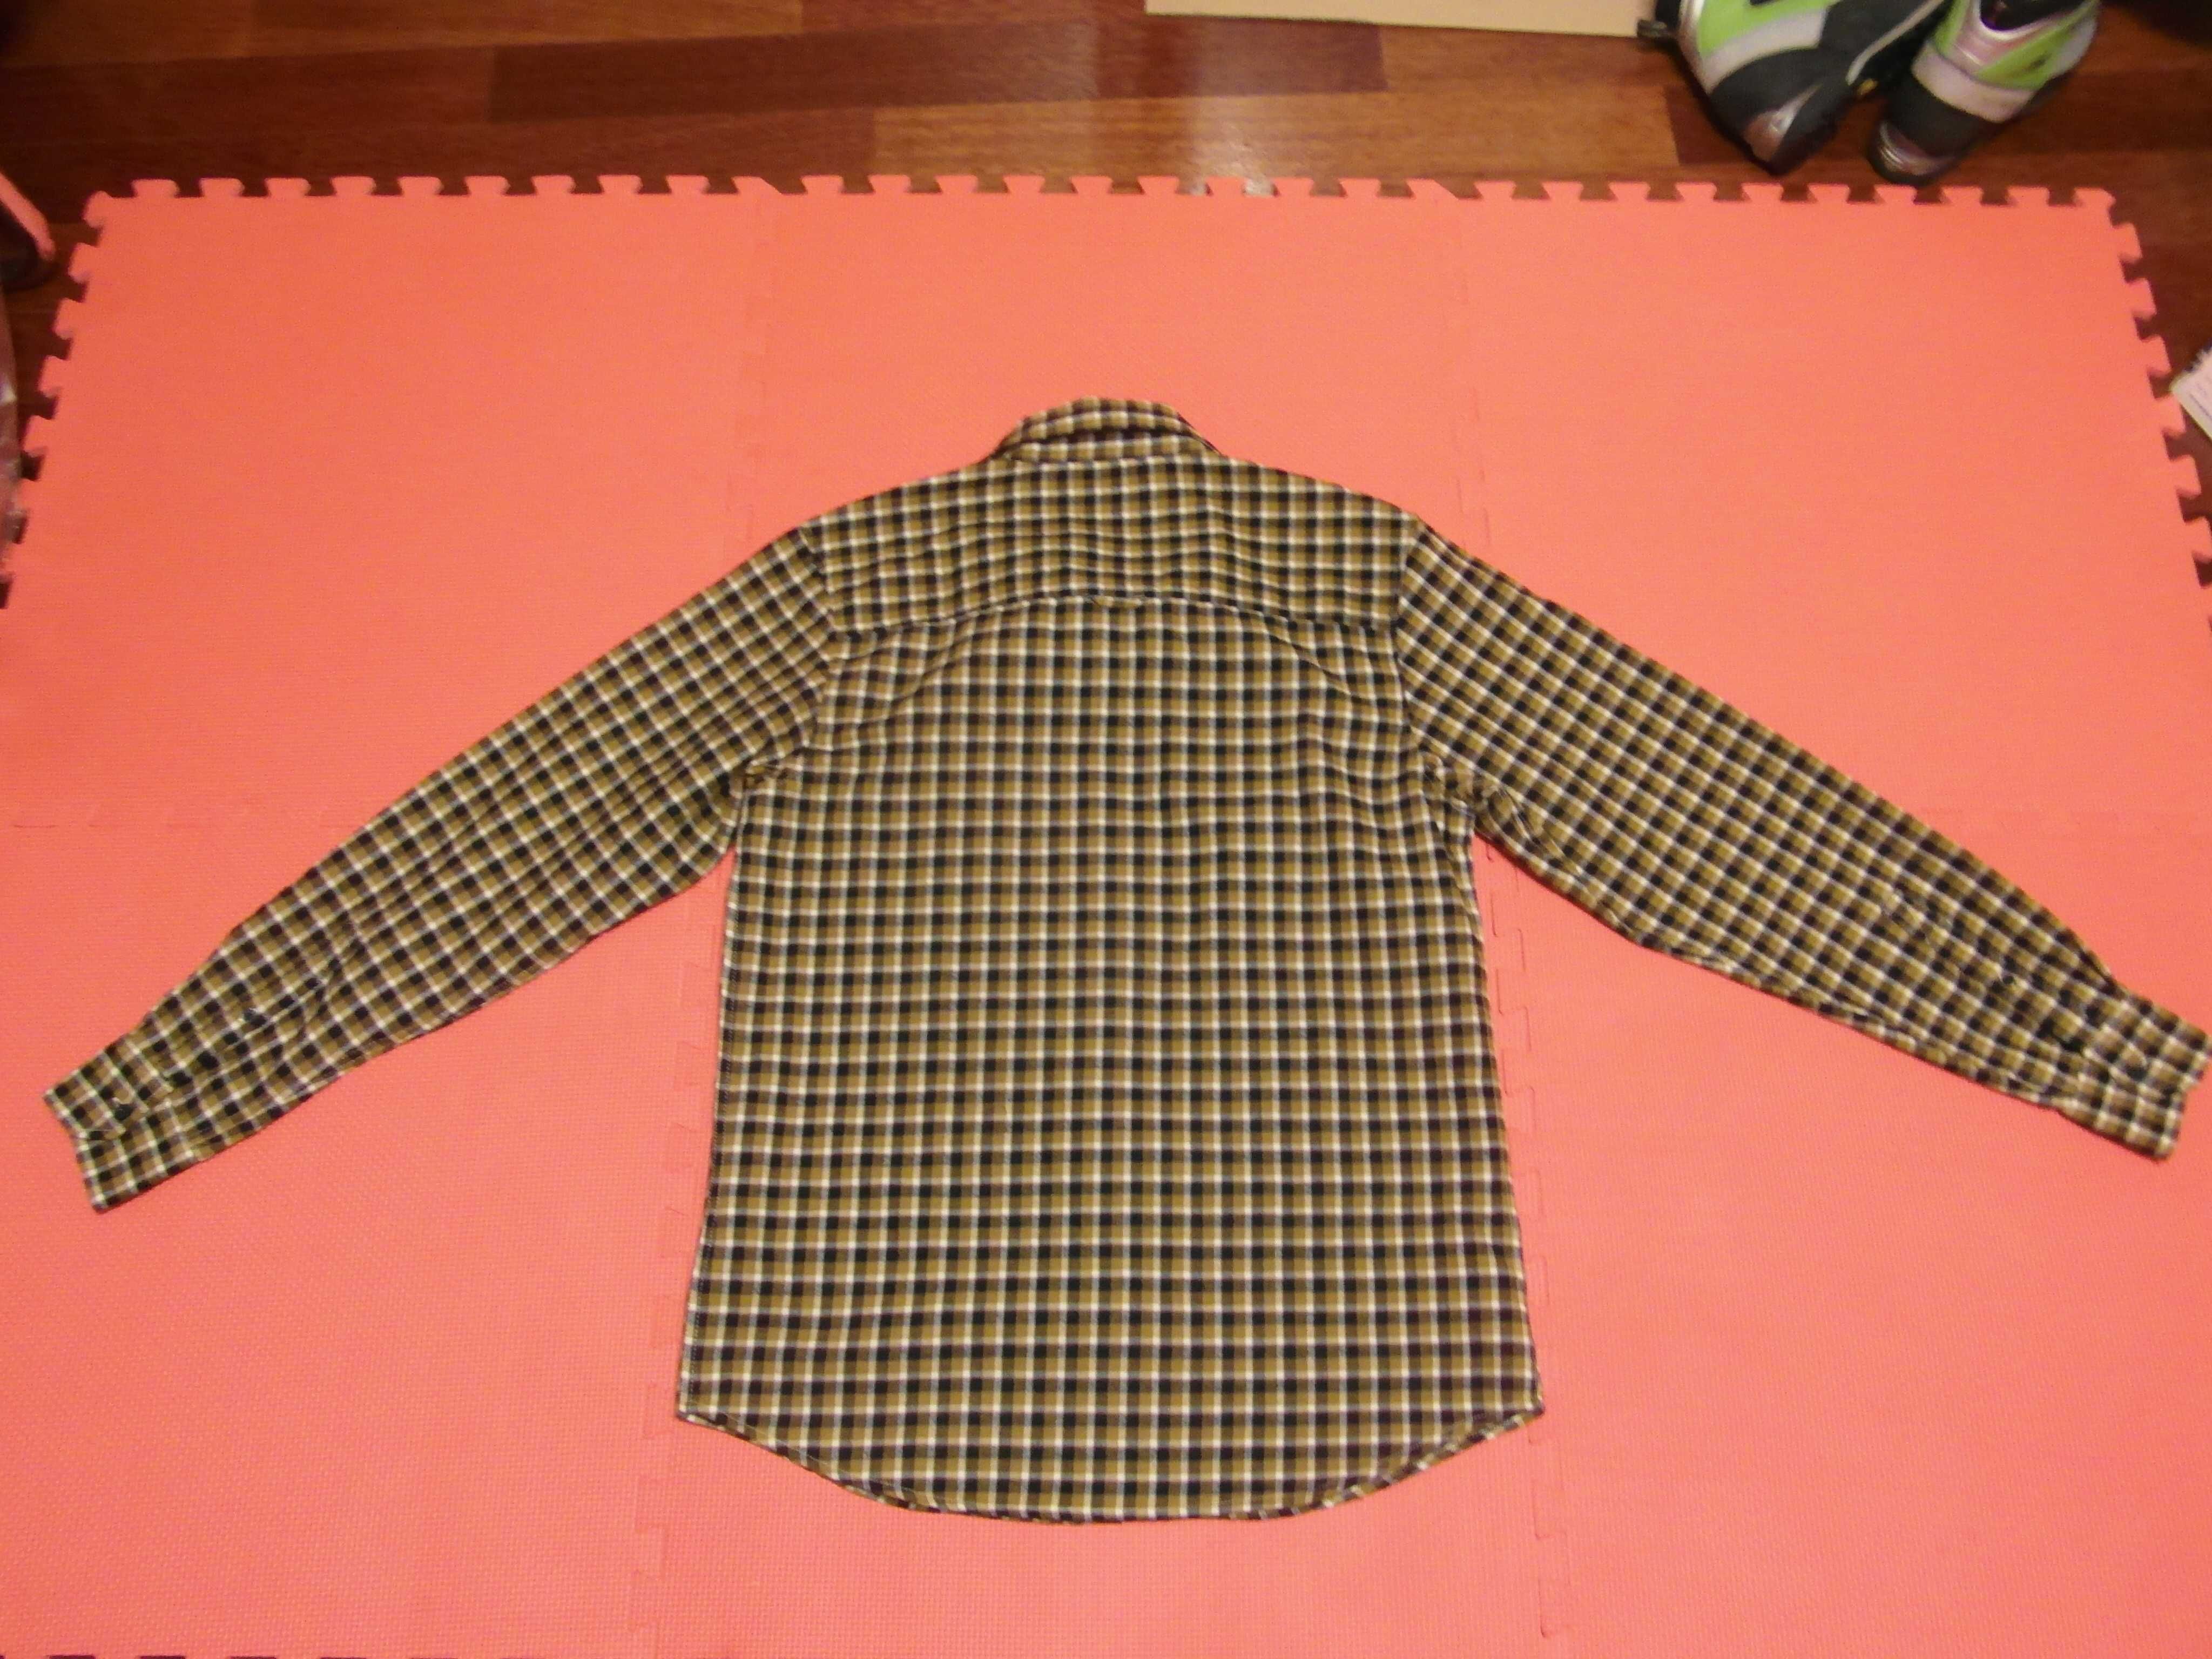 Męska koszula craghoppers Kiwi Long Sleeve check; rozmiar M;